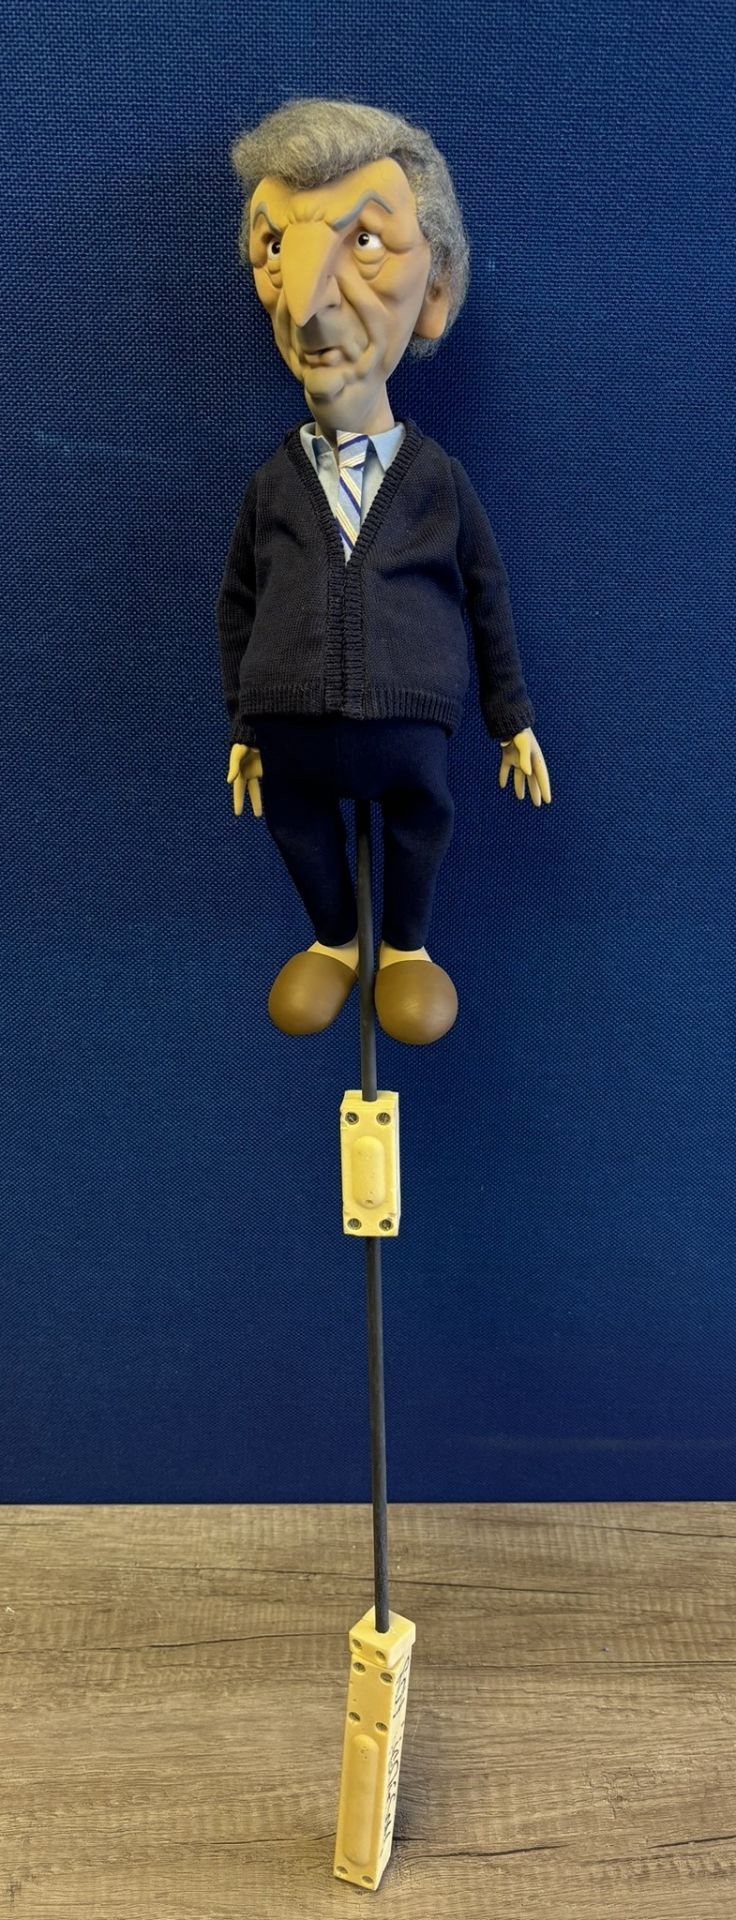 Newzoid puppet - Roy Hodgson - Image 3 of 3